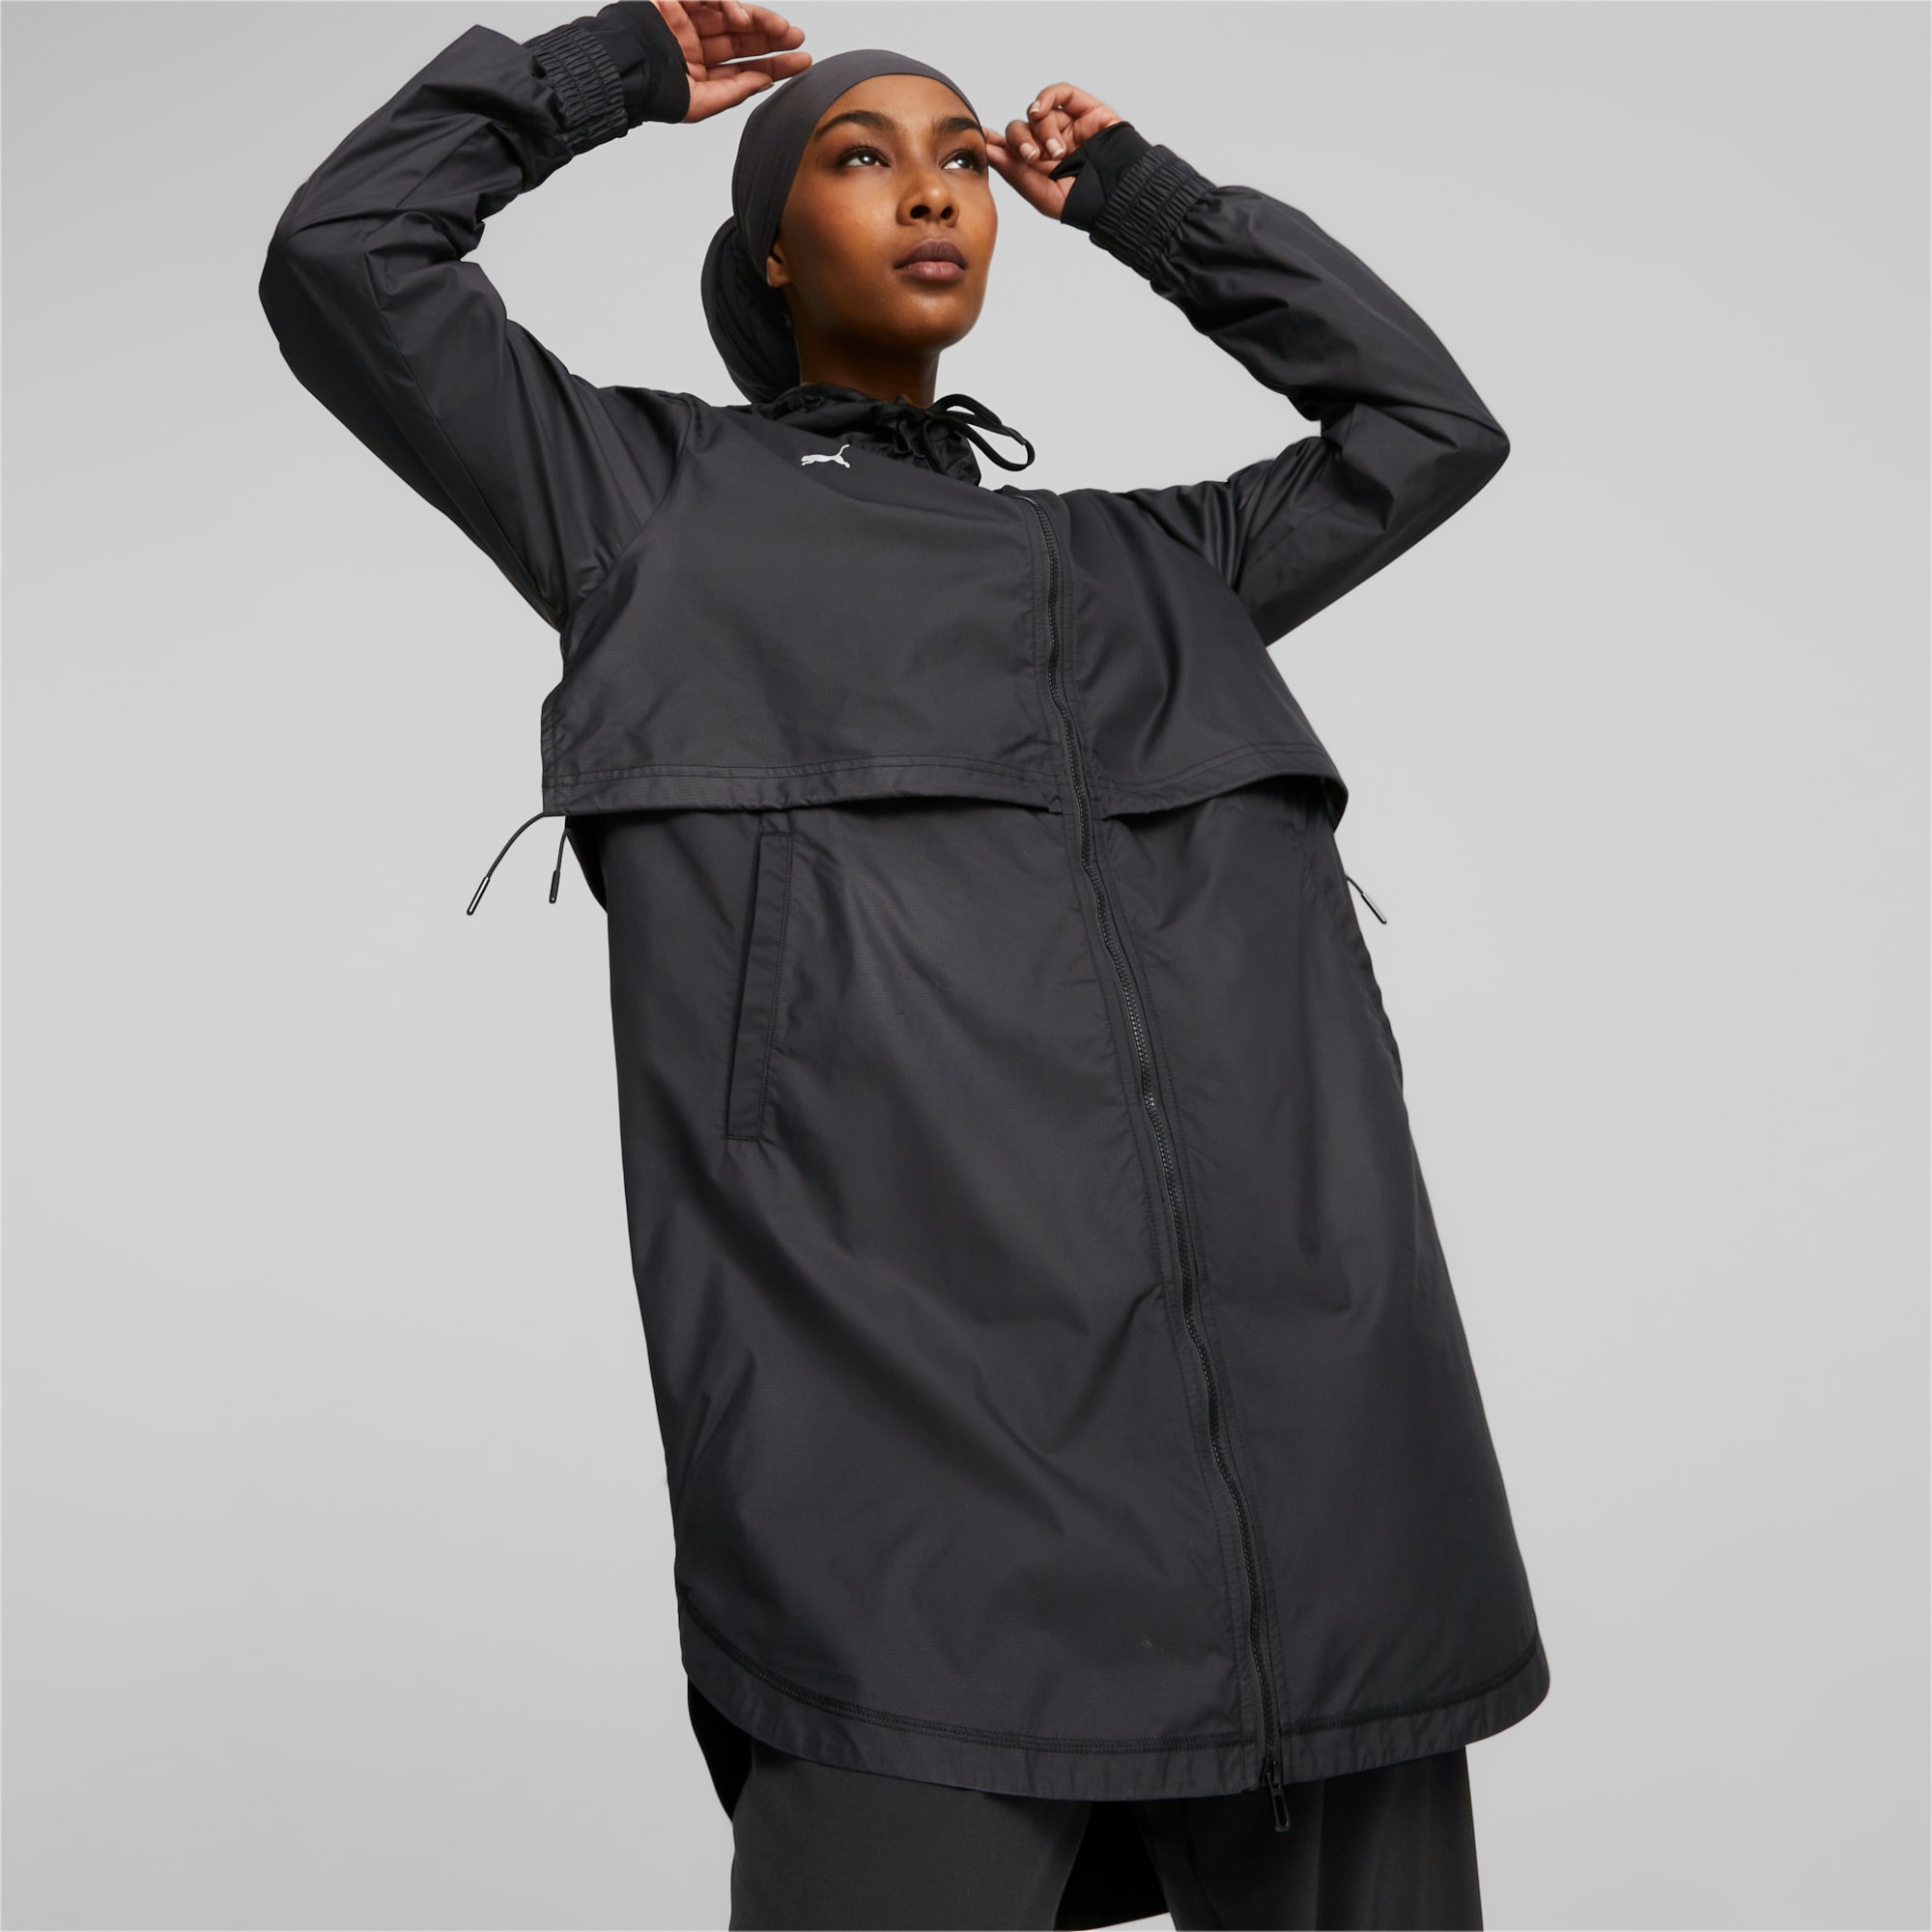 Modest Activewear Training Rain Jacket Women